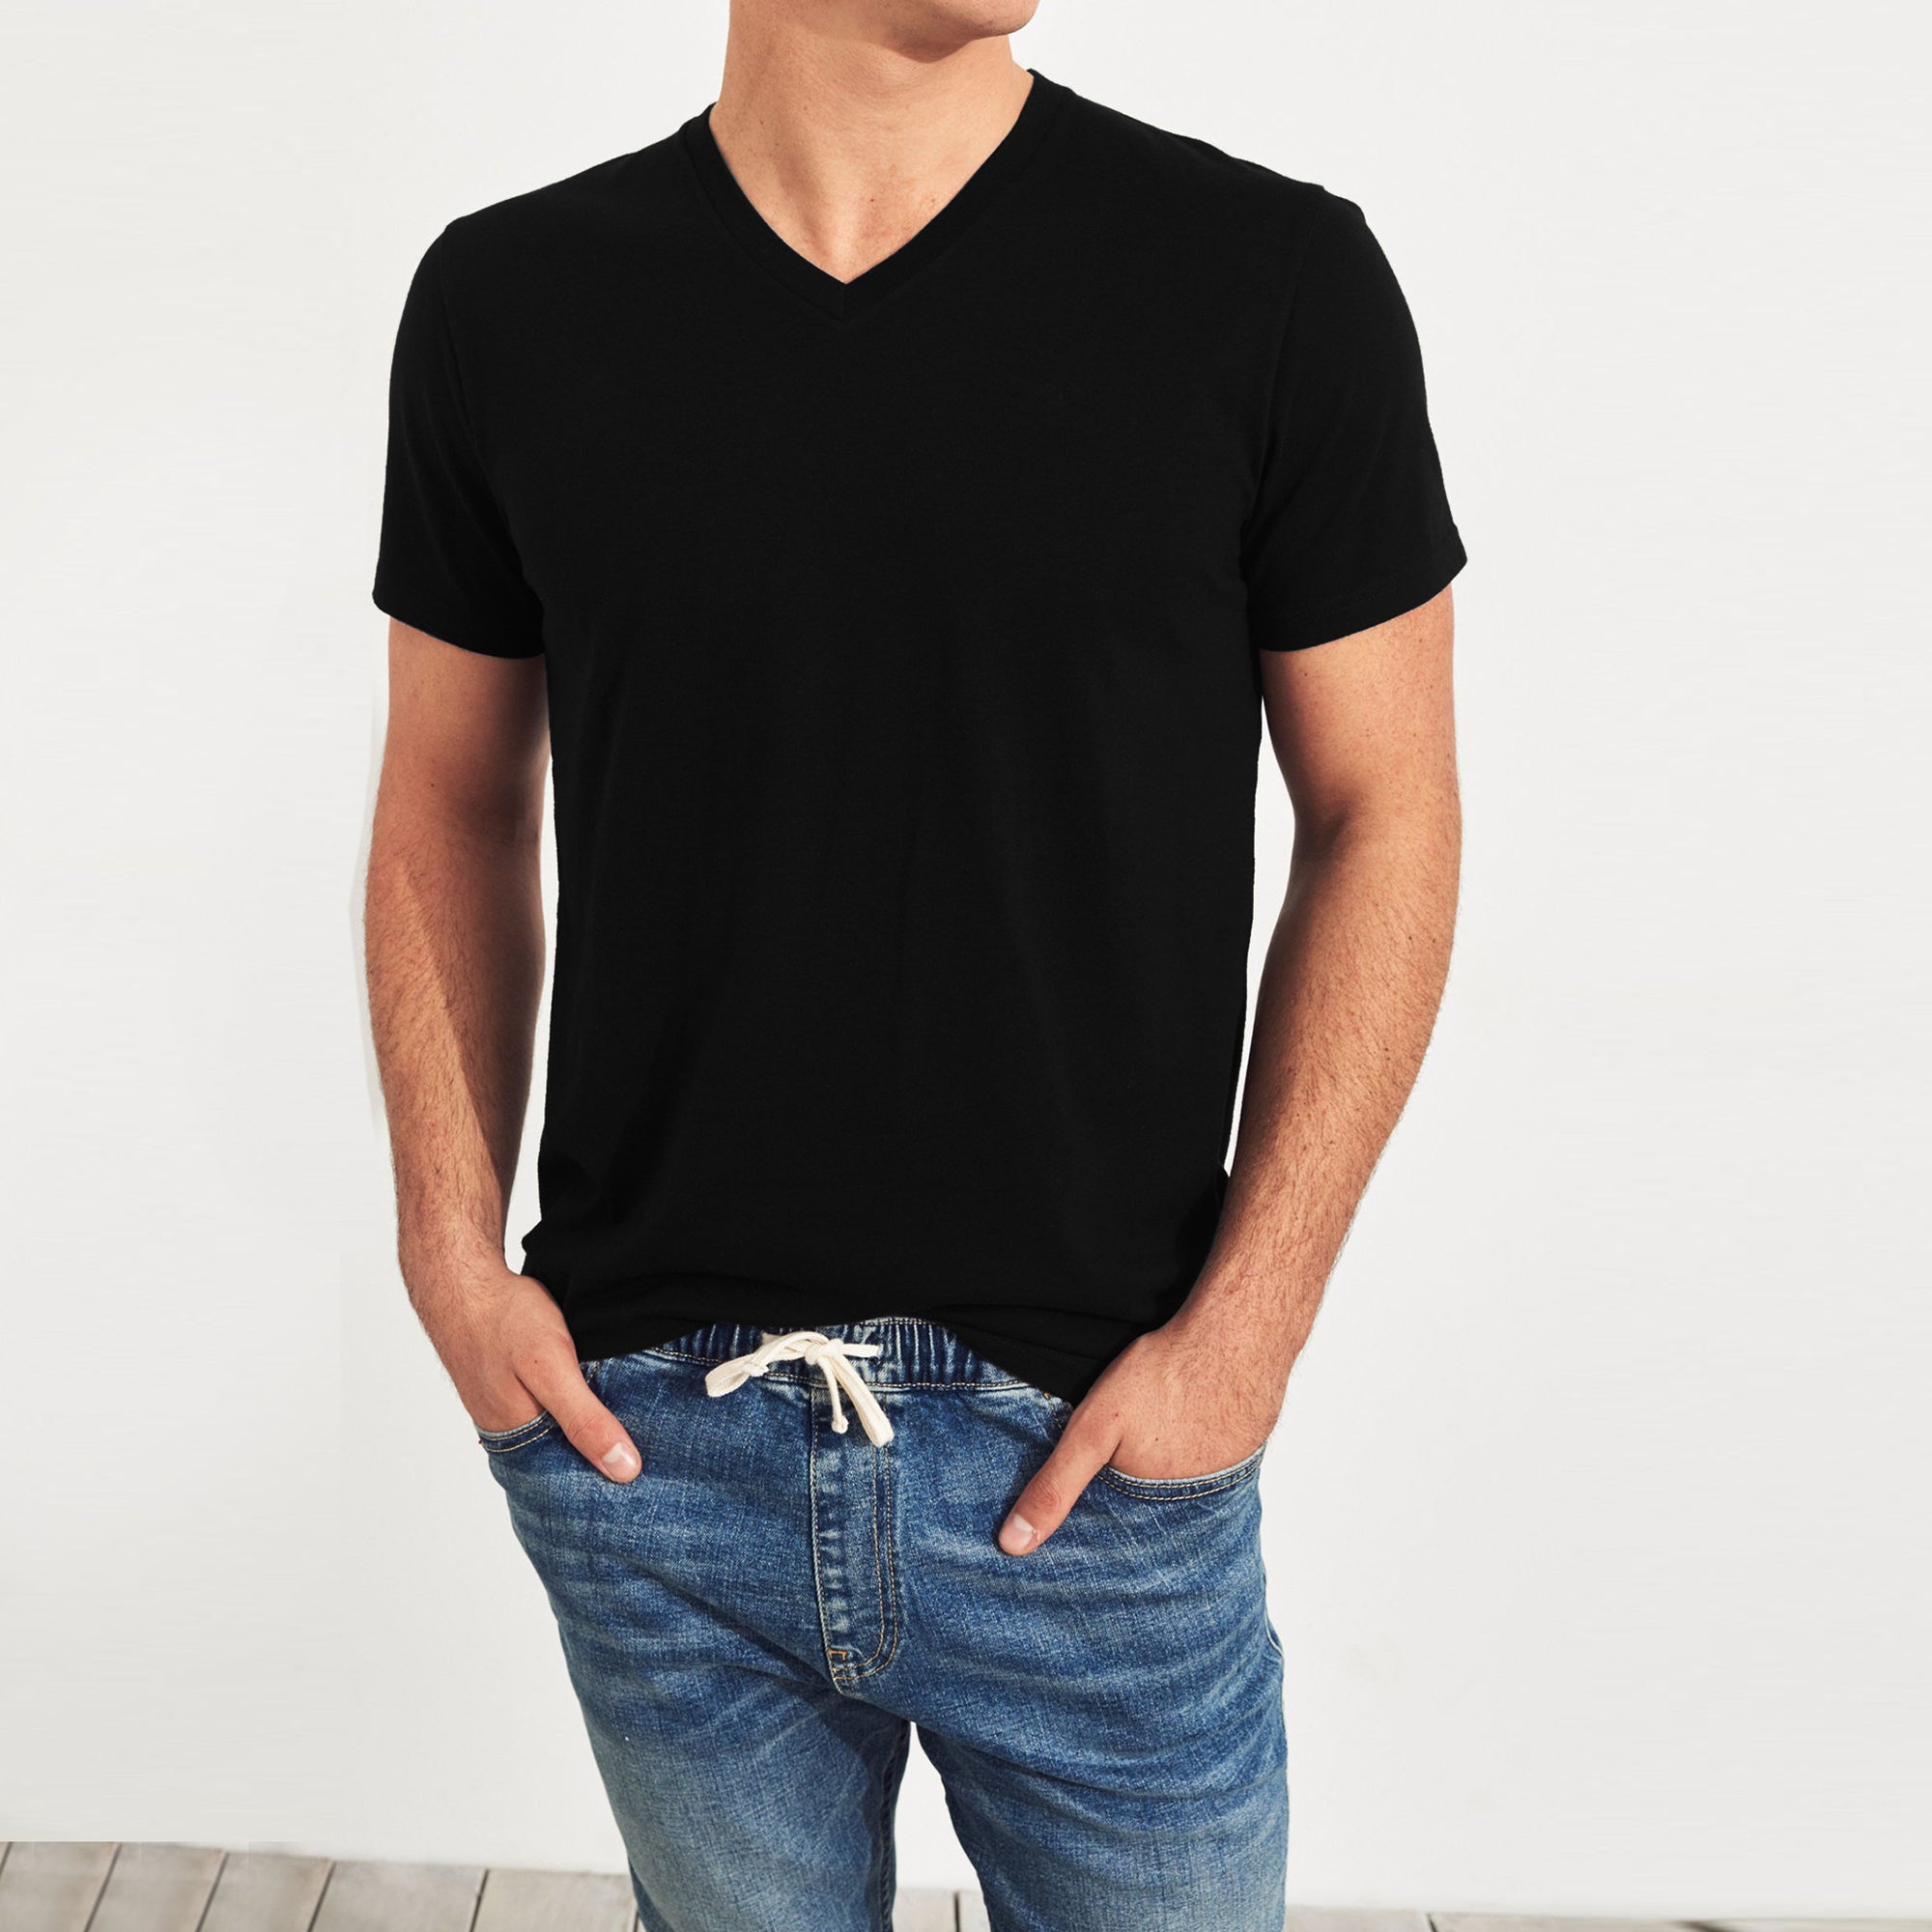 Tee Shirts For Men - BrandsEgo.Com